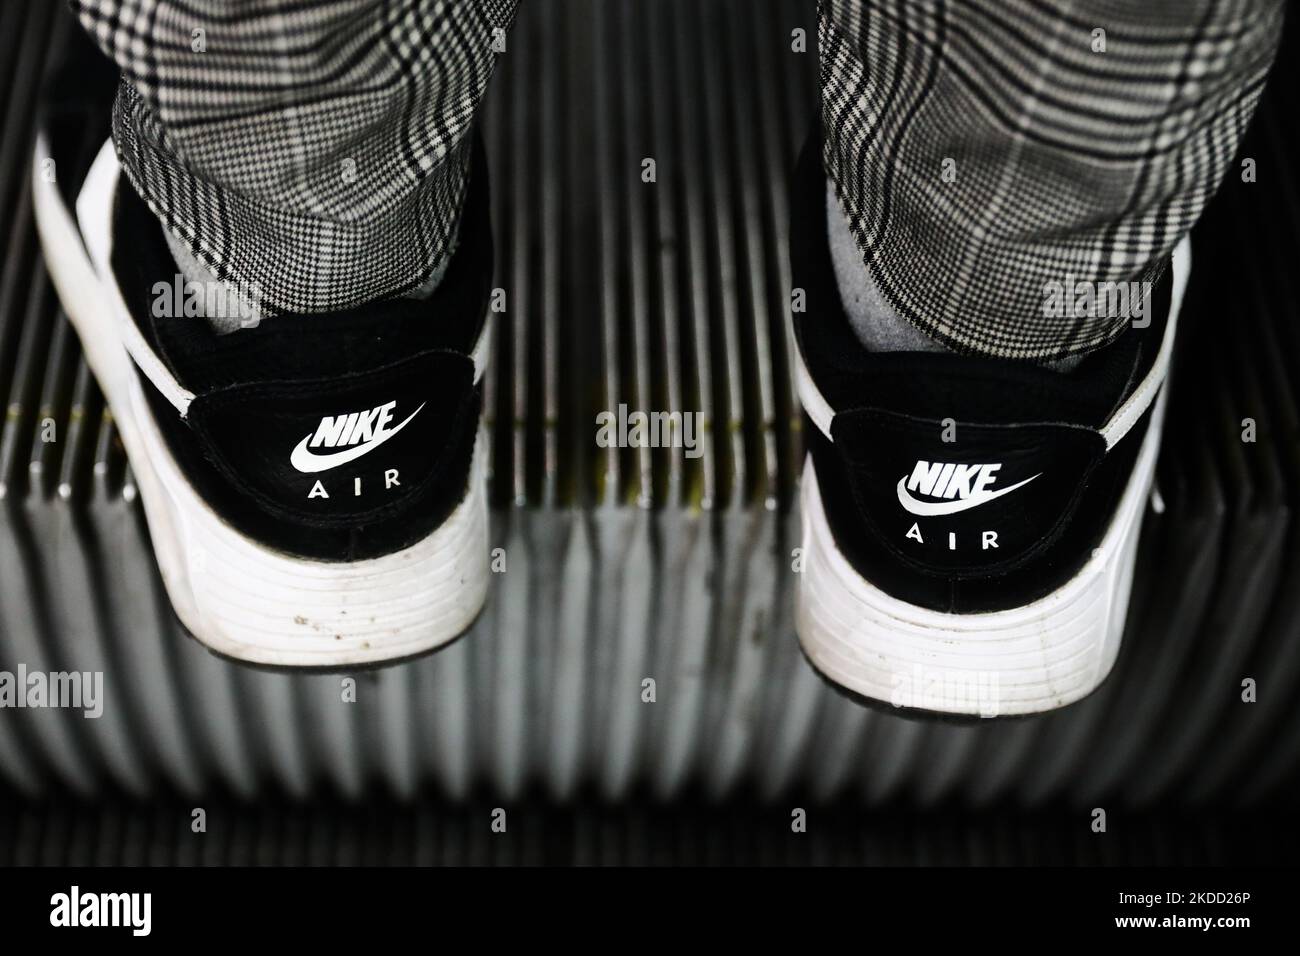 Zapatos nike e imágenes alta resolución Alamy